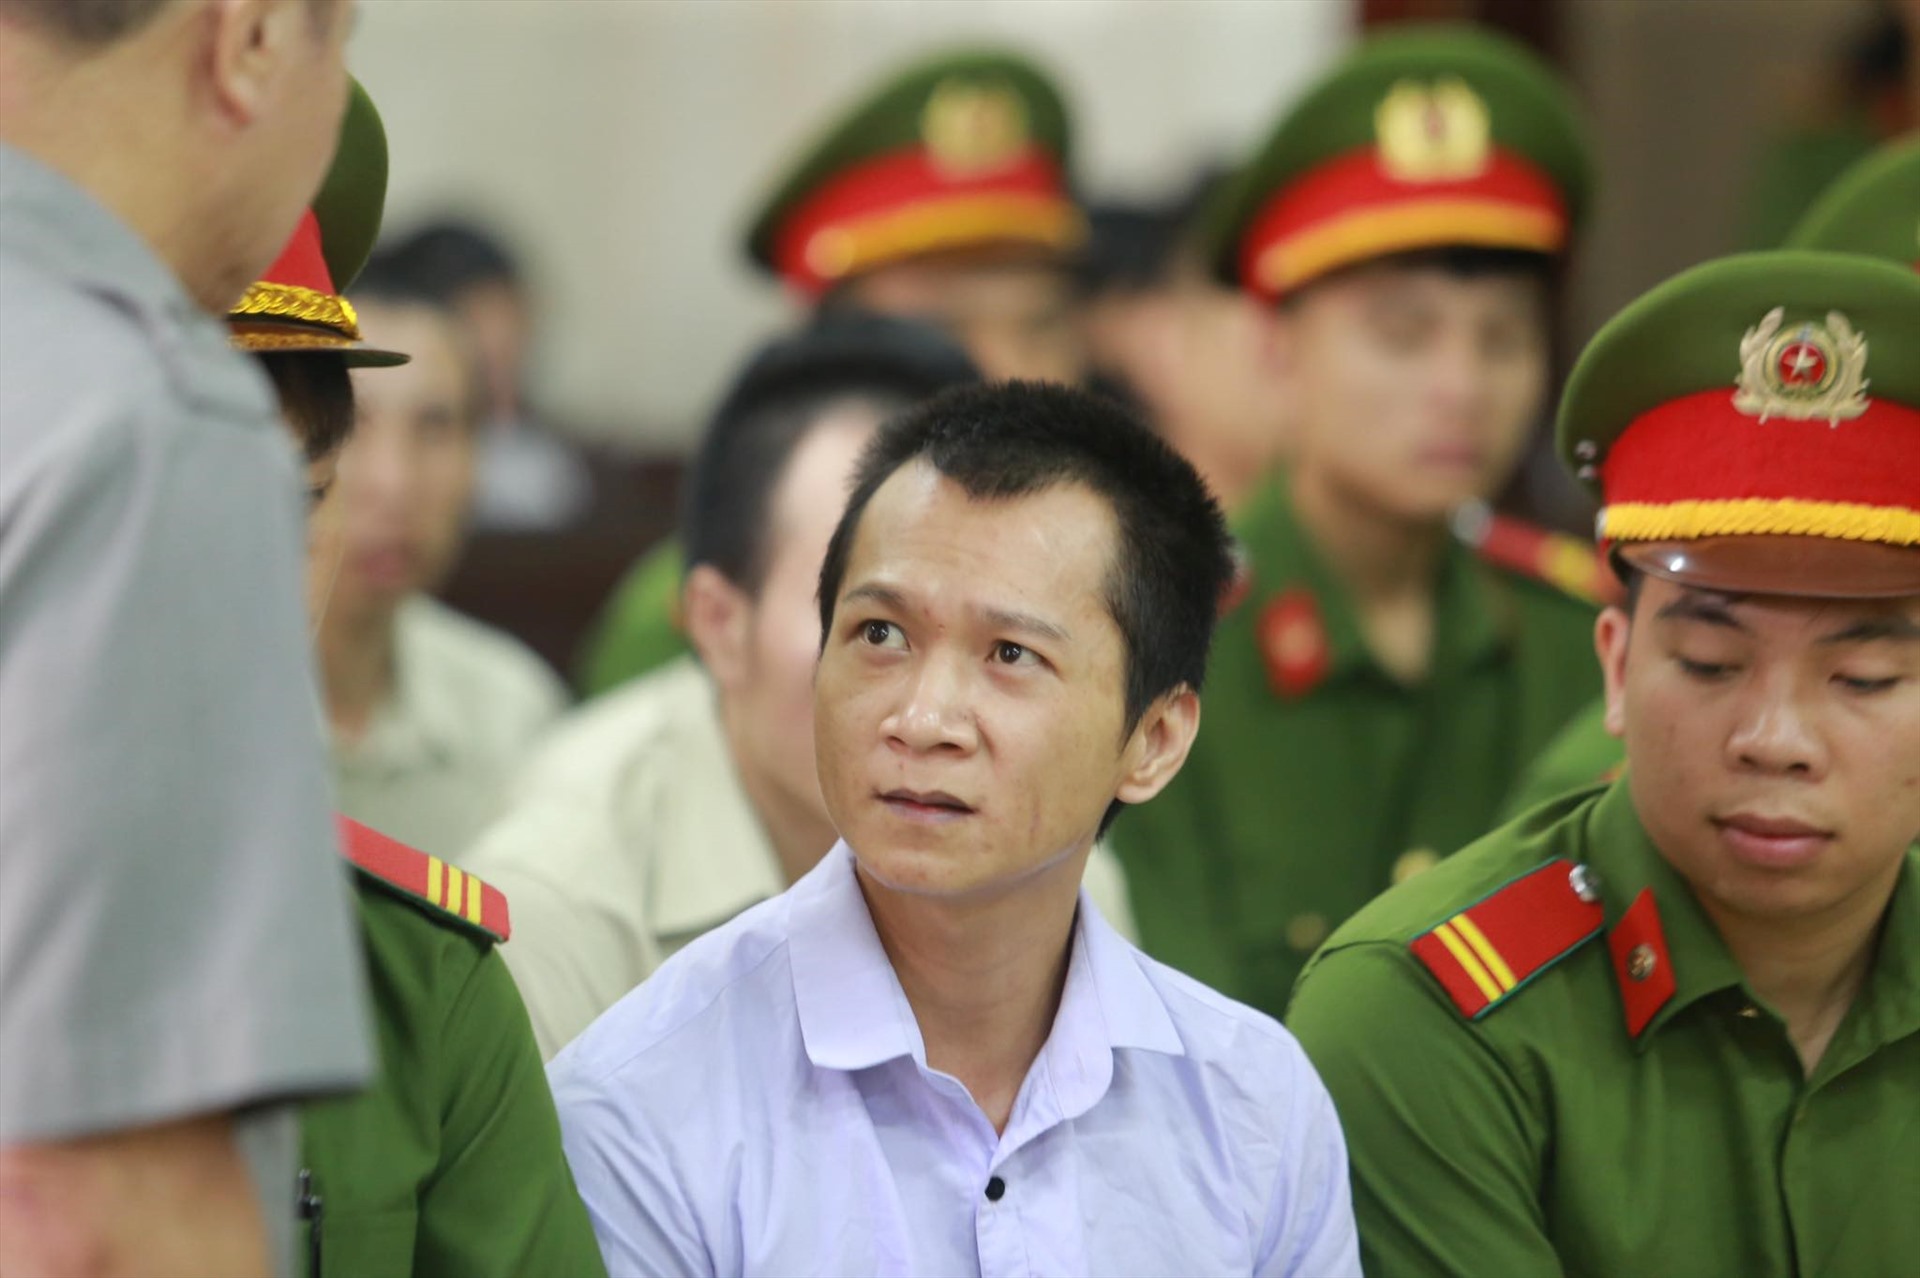 Vương Văn Hùng cũng bị cấp sơ thẩm tuyên phạt mức án tử hình, song bị cáo kêu oan. Ảnh: V.Dũng.